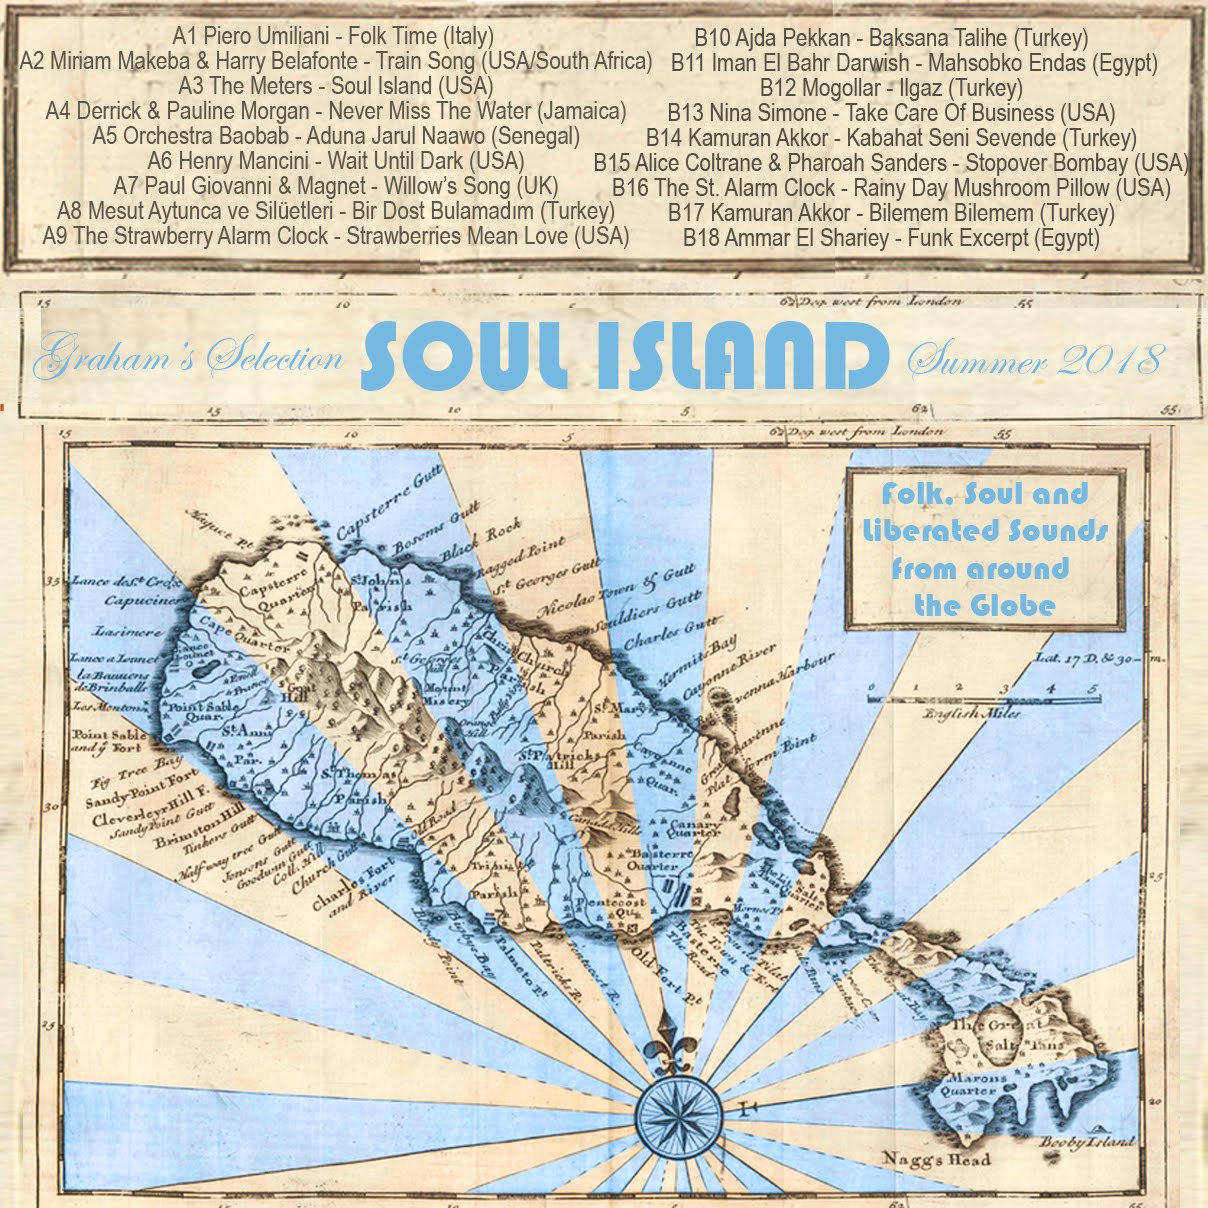 GRHM#12 - SOUL ISLAND